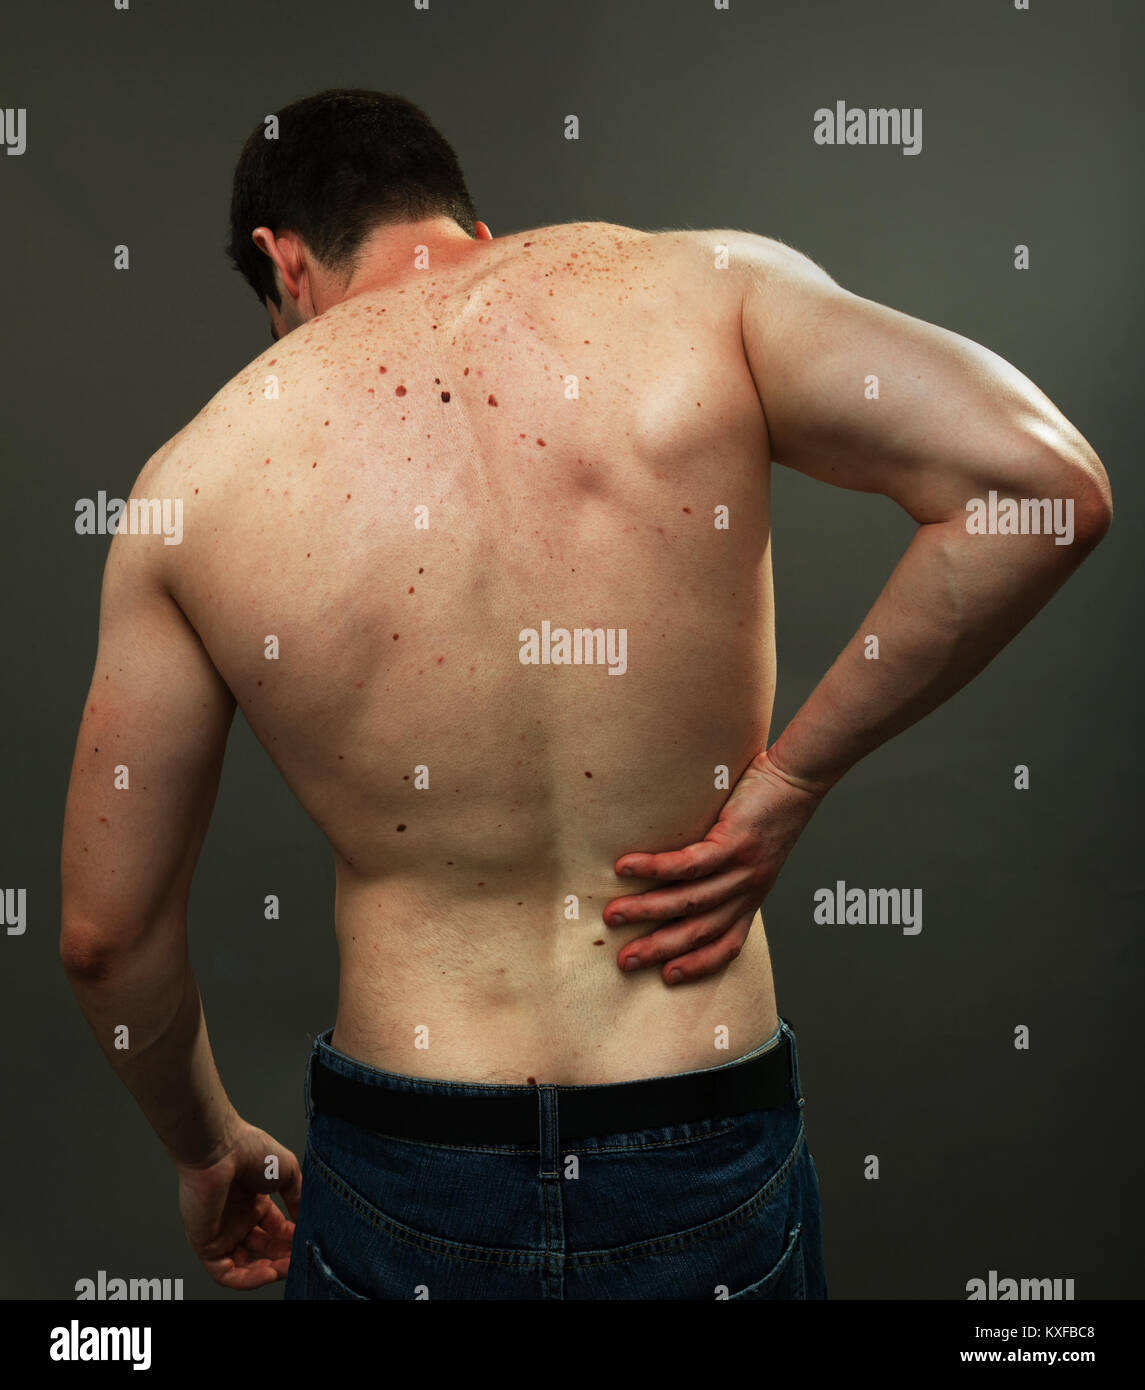 Male back skin full of melanoma moles Stock Photo